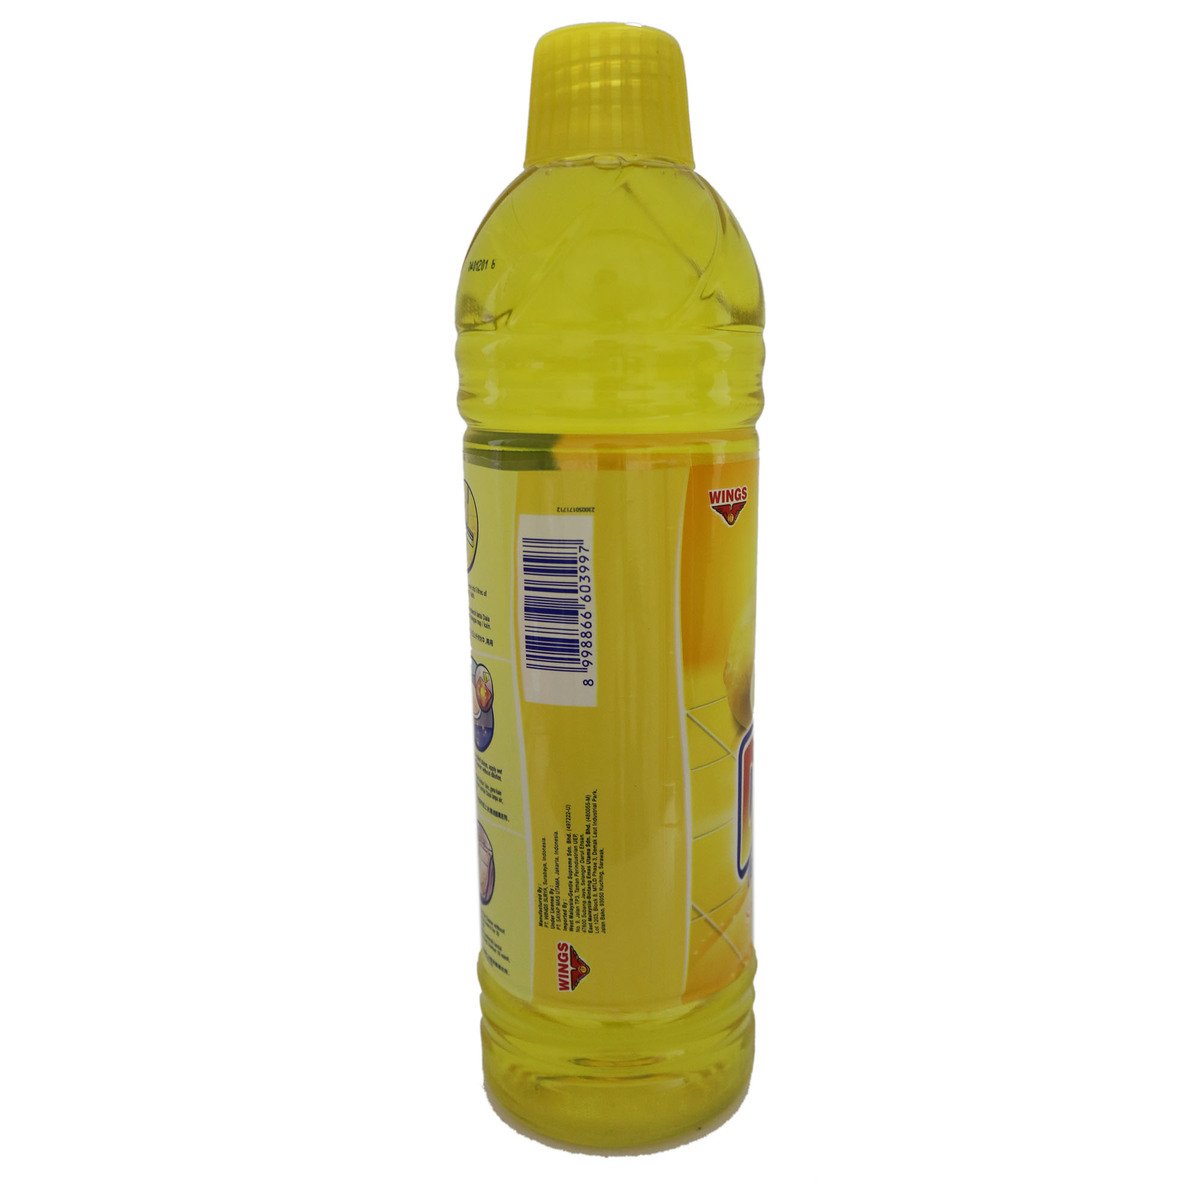 Daia Lemon Yellow Floor Cleaner Bottle 900ml